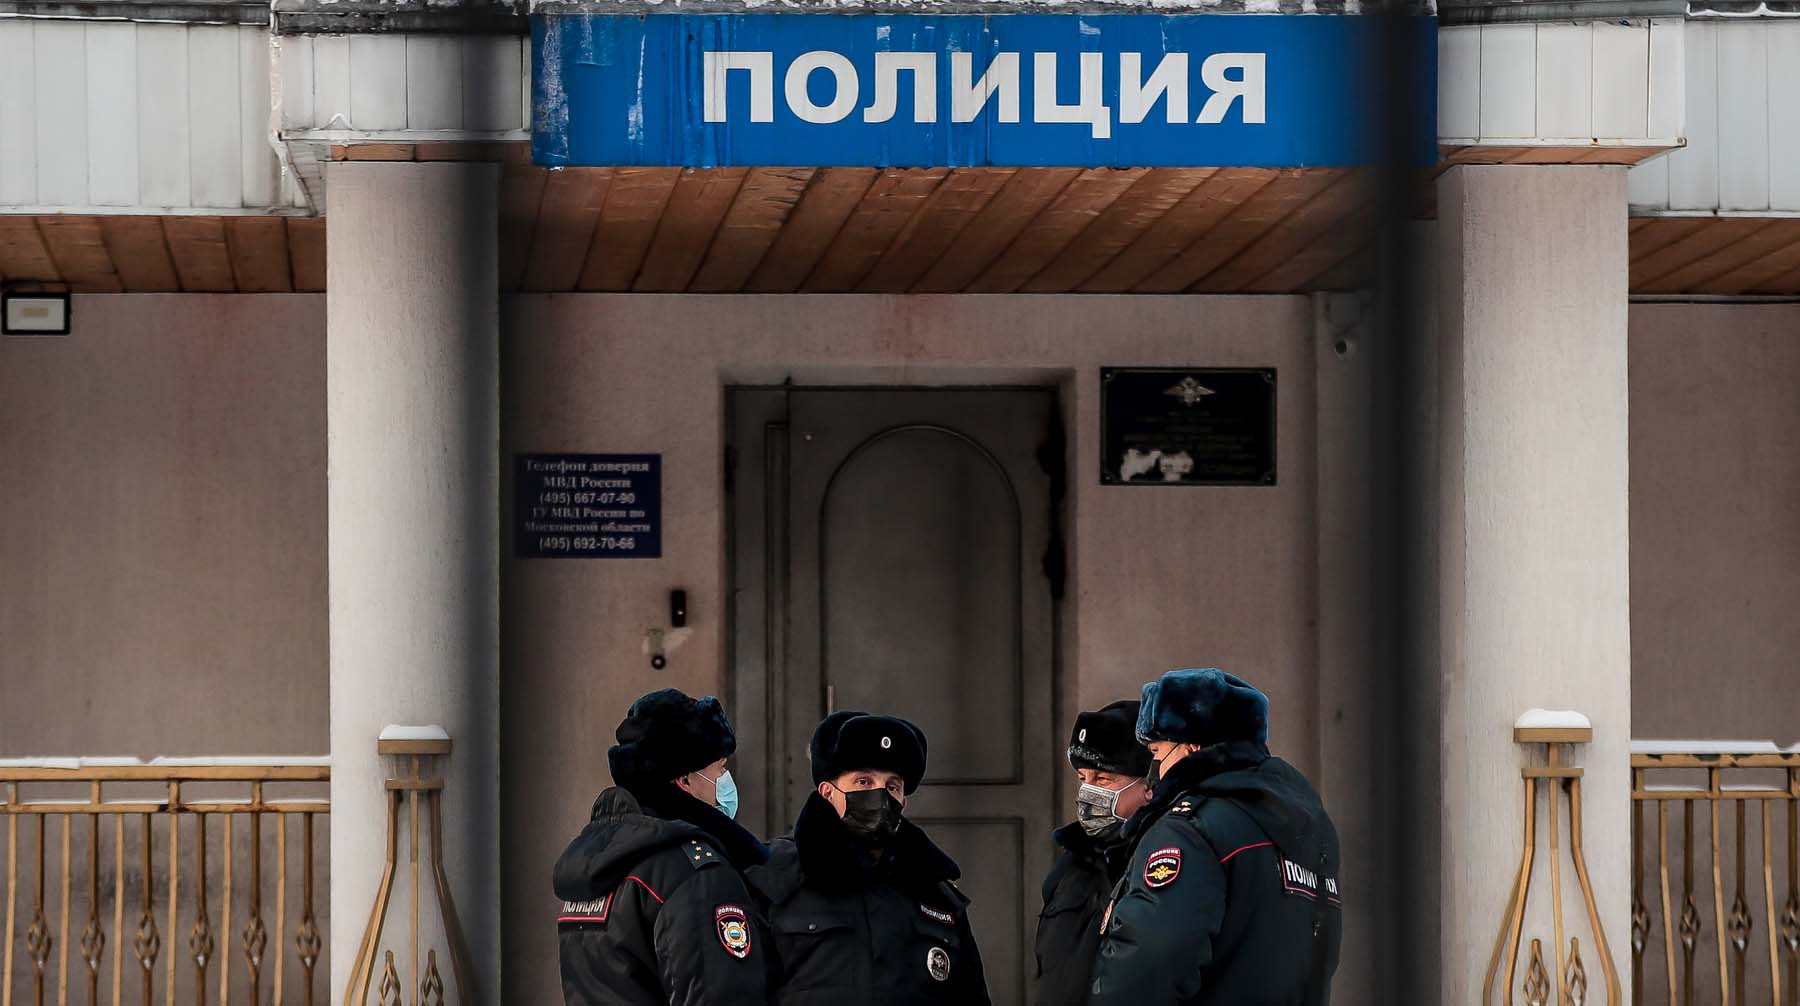 Водитель машины ранил полицейского, а пассажир выстрелил в росгвардейца Фото: © Global Look Press / Дмитрий Голубович